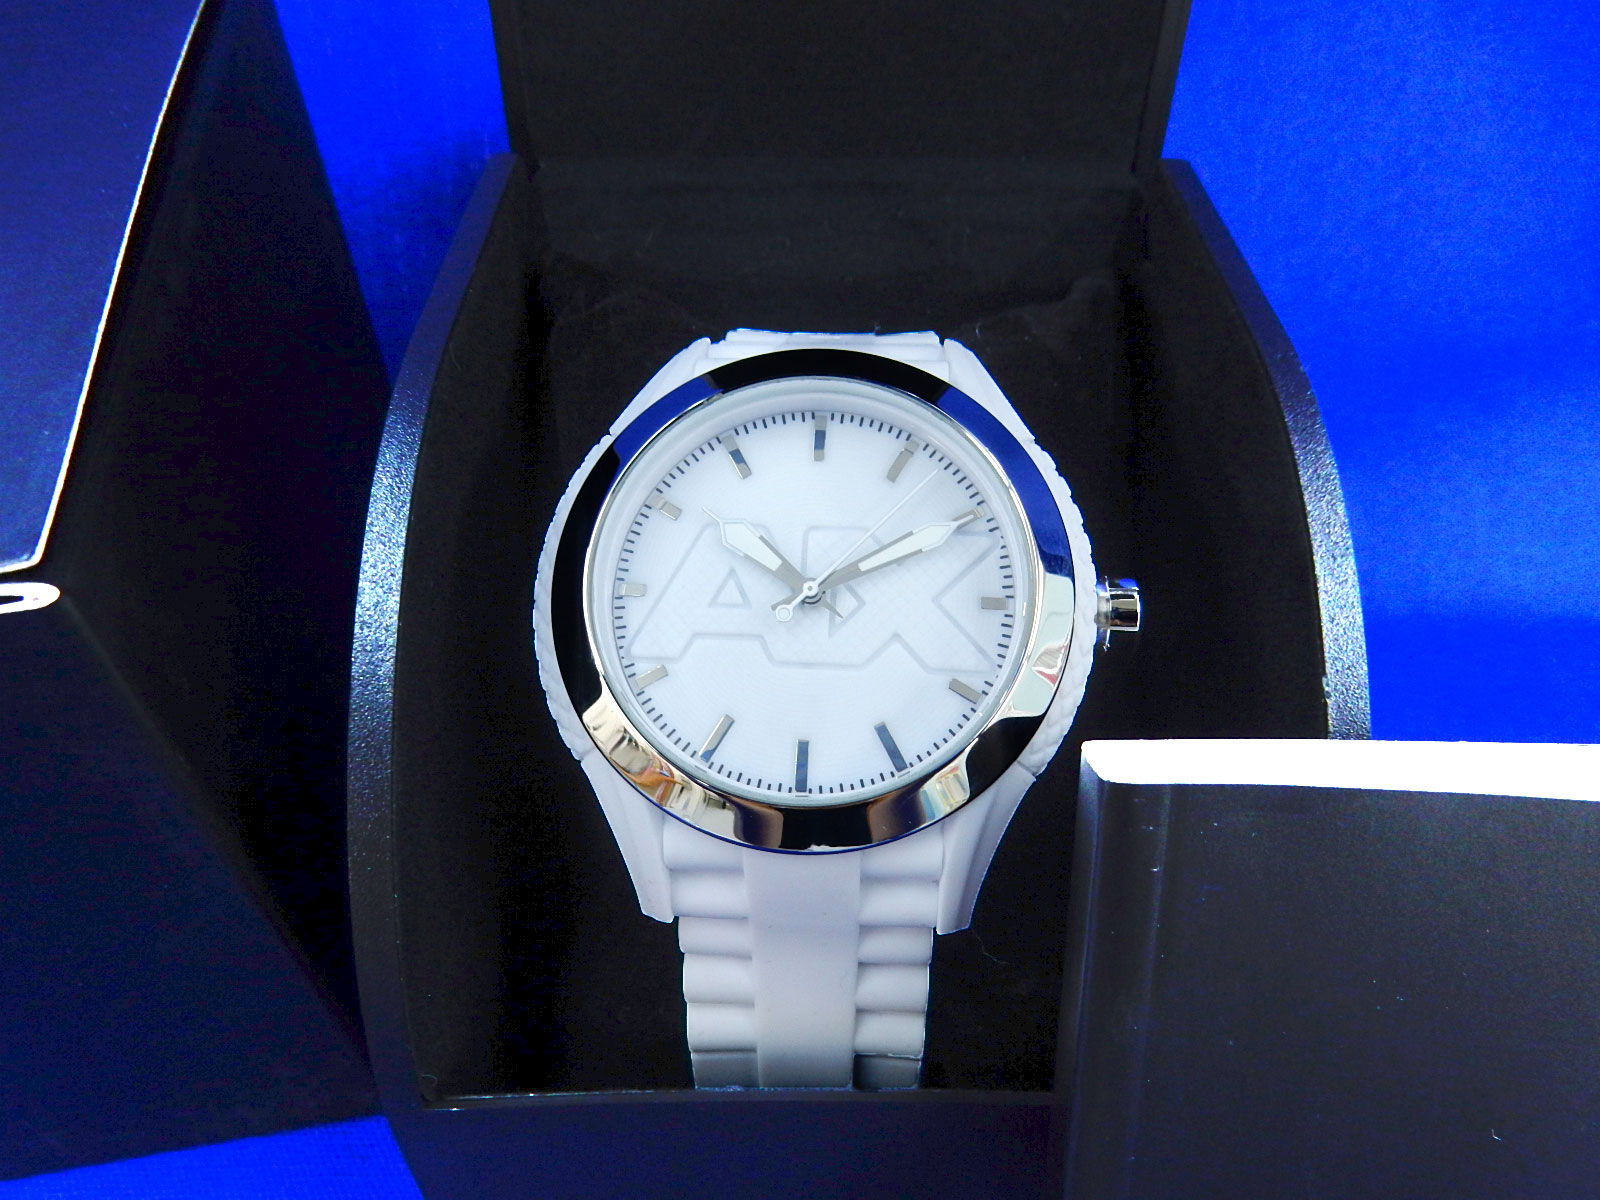 Armani Exchange アルマーニエクスチェンジ 腕時計 AX1380 ホワイトラバー 買取 茨城 ニコニコ堂下妻店 | 中古品の高価